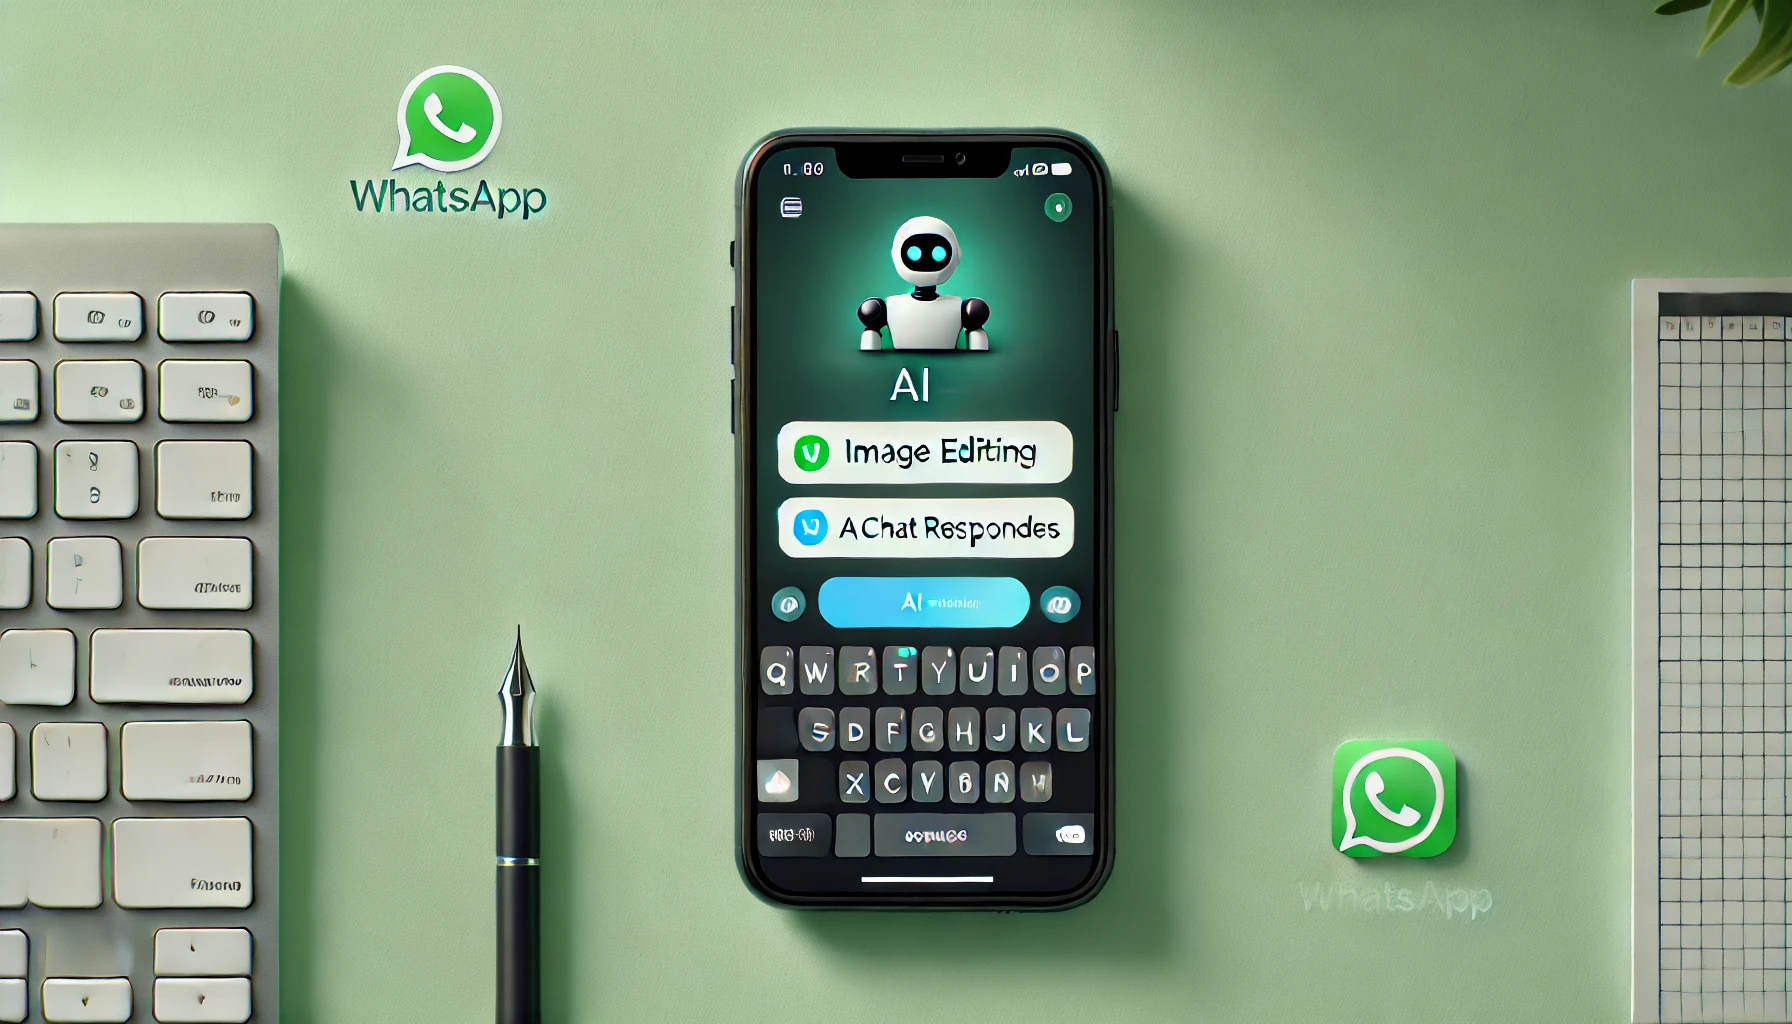 WhatsApp integrará IA de Meta para editar y responder imágenes